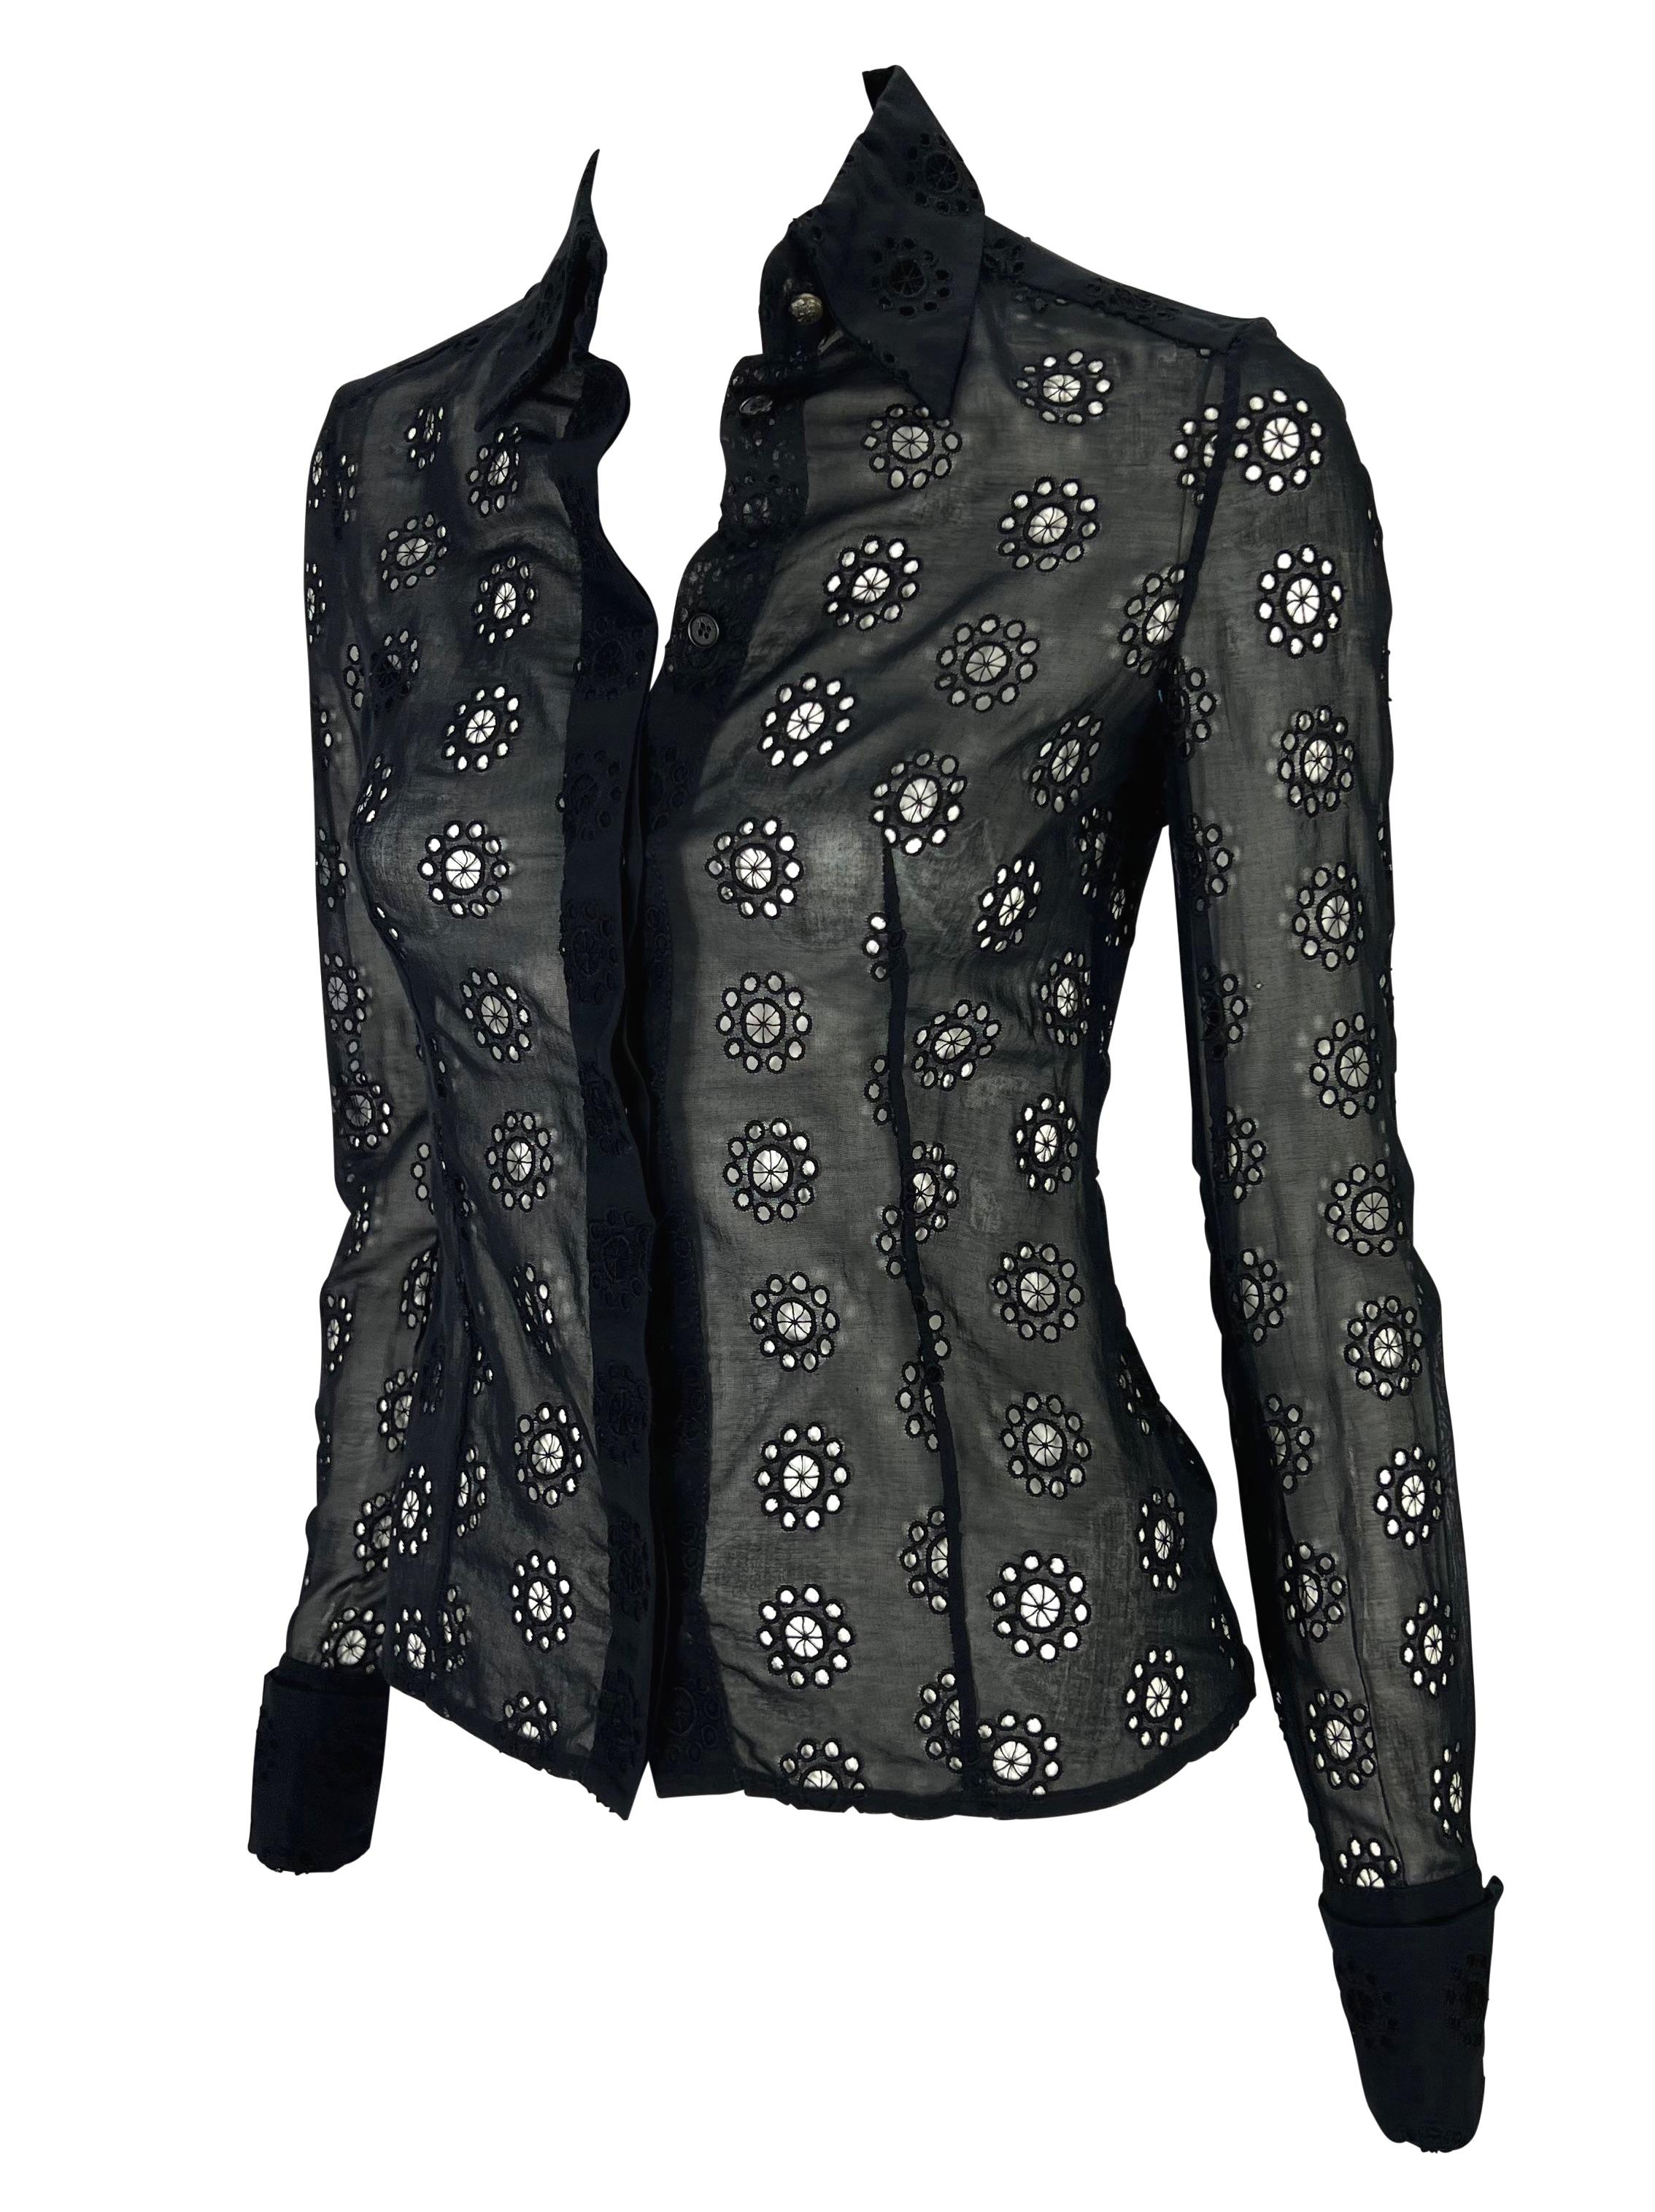 Ich präsentiere ein schwarzes Gianni Versace Couture Oberteil mit durchsichtigen Ösen, entworfen von Donatella Versace. Dieses fabelhafte, taillierte Button-Down-Oberteil aus der Frühjahr/Sommer-Kollektion 2002 hat Ösenausschnitte, einen Kragen und